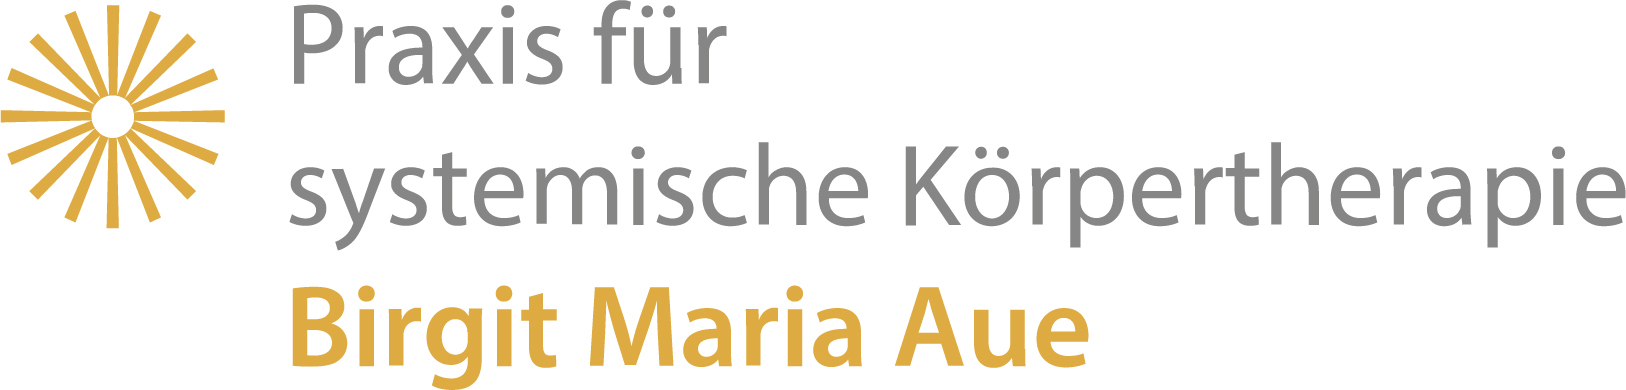 Praxis für systemische Körpertherapie Birgit Maria Aue